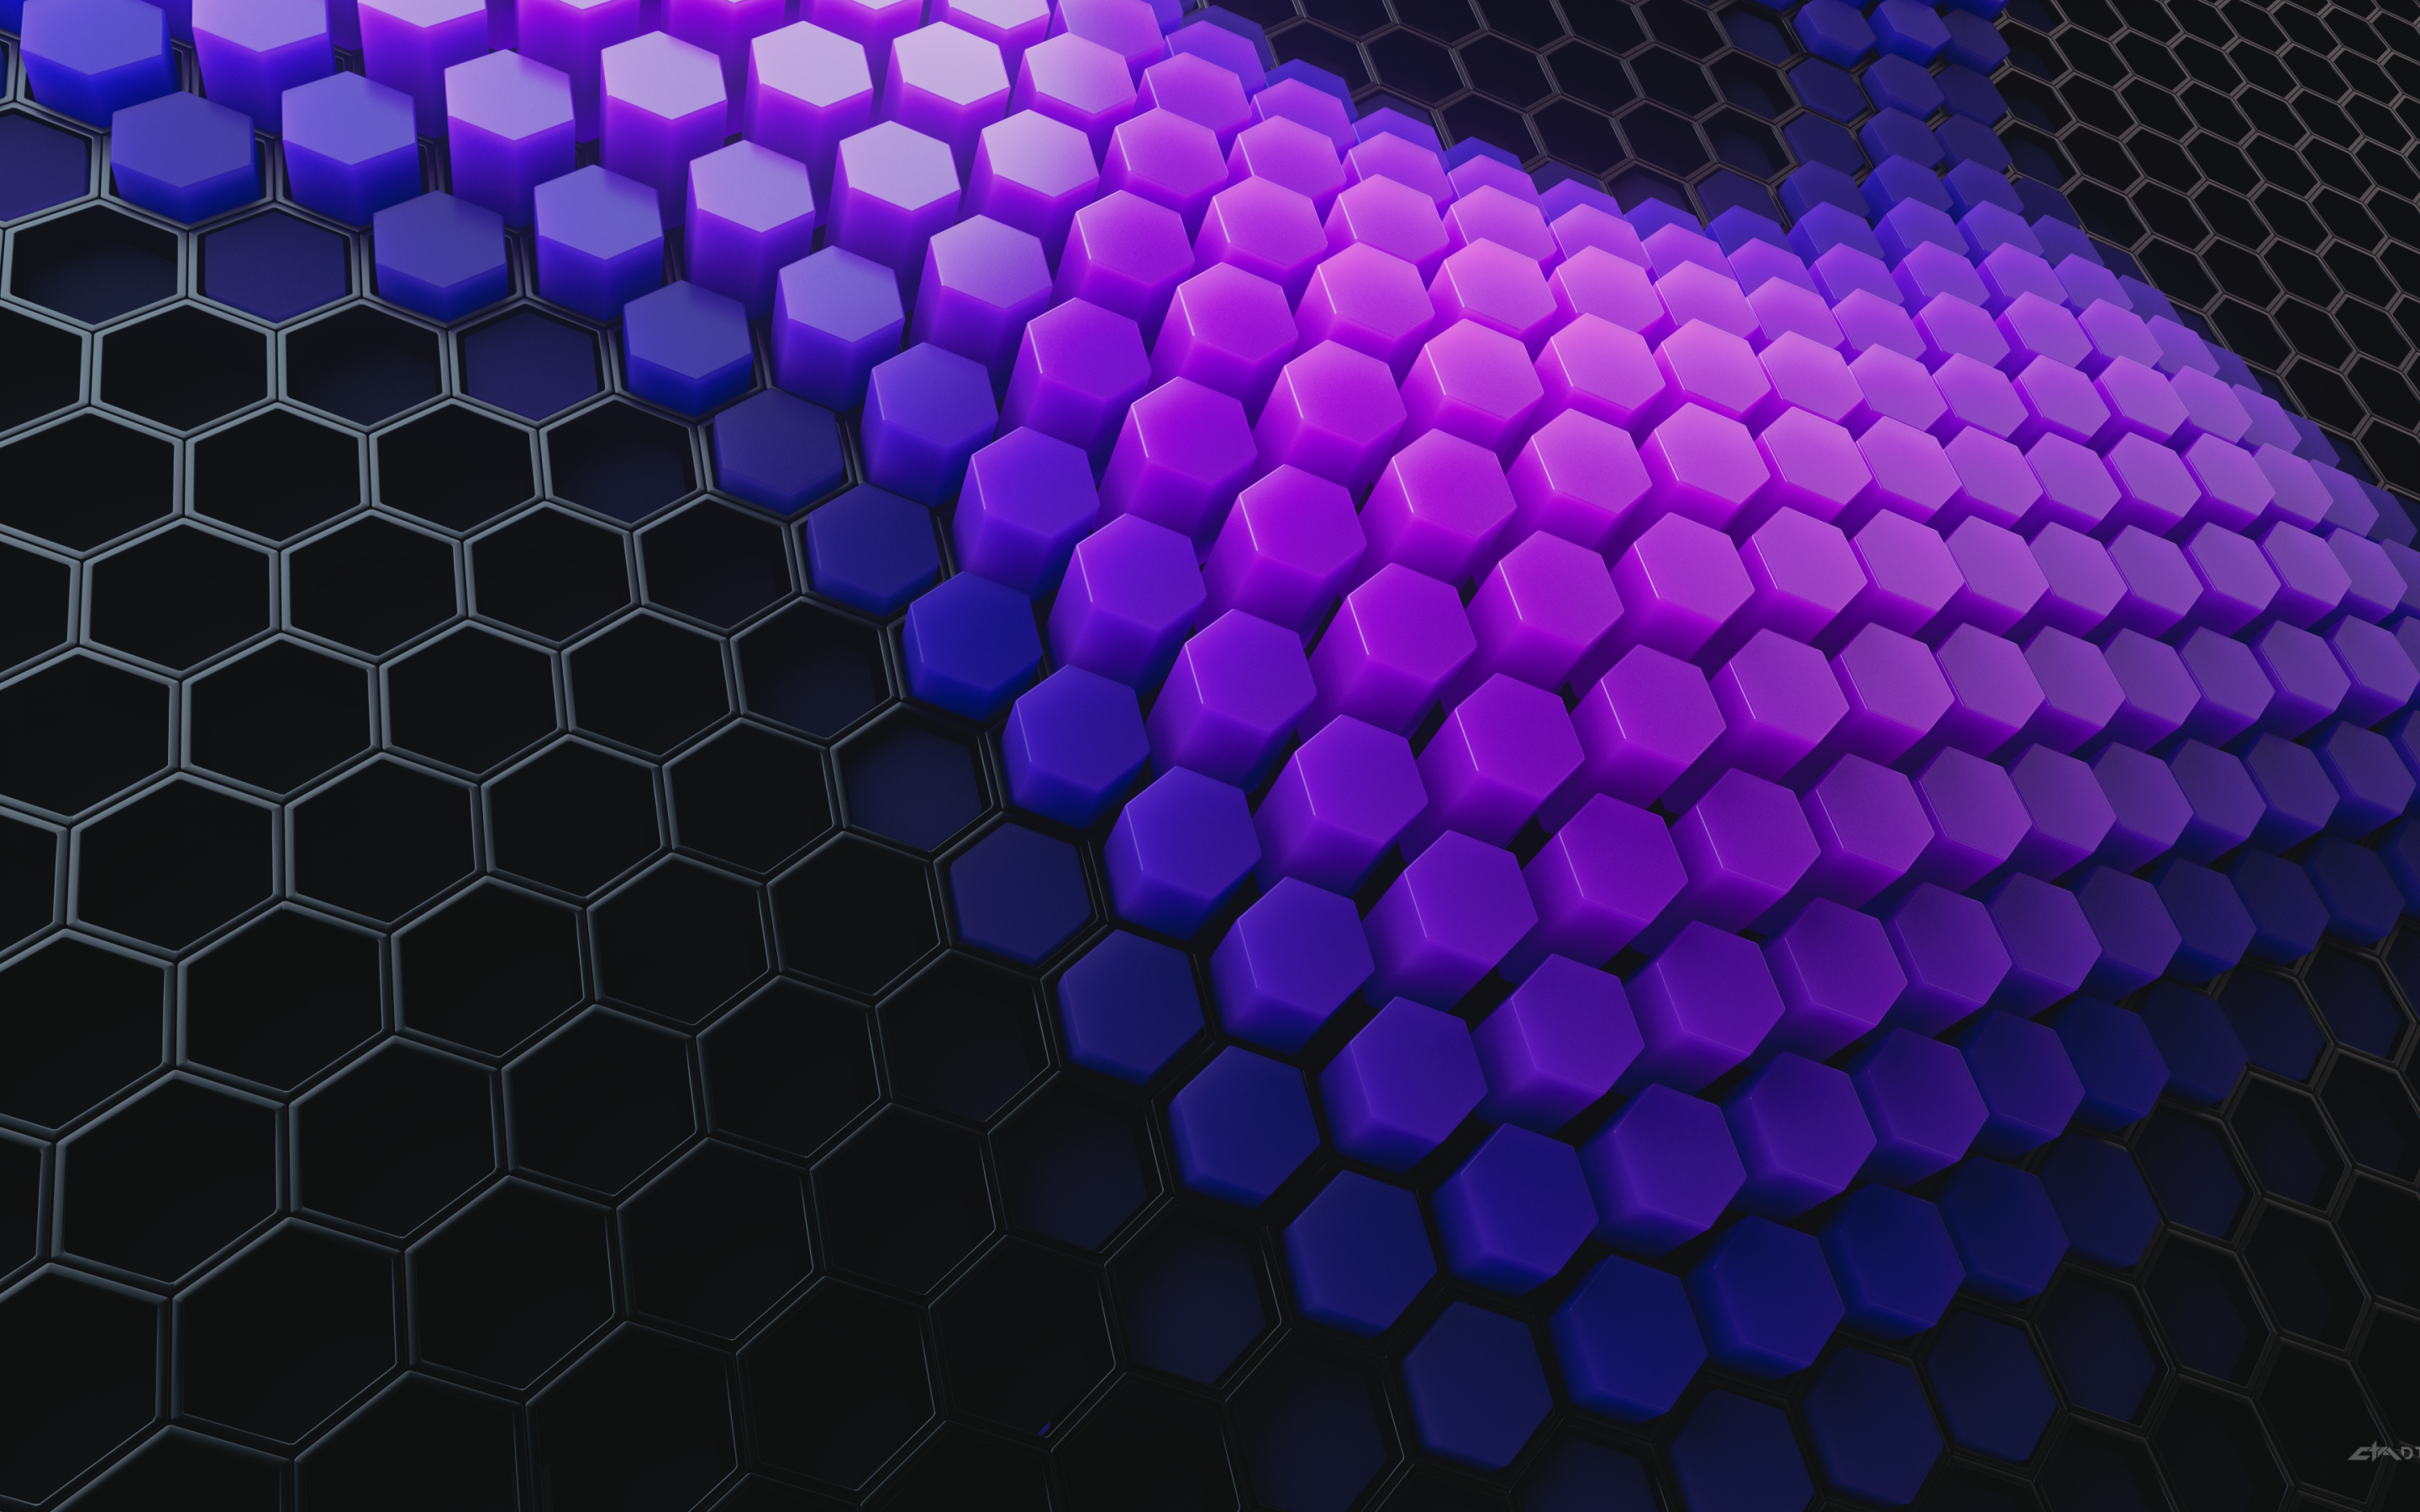 Với độ phân giải 4K và hình dạng hexagon độc đáo, hình nền này sẽ làm cho máy tính của bạn trở nên đẹp hơn bao giờ hết. Hãy cùng chiêm ngưỡng và khám phá không gian mới mẻ với hình nền hexagon 4K này.